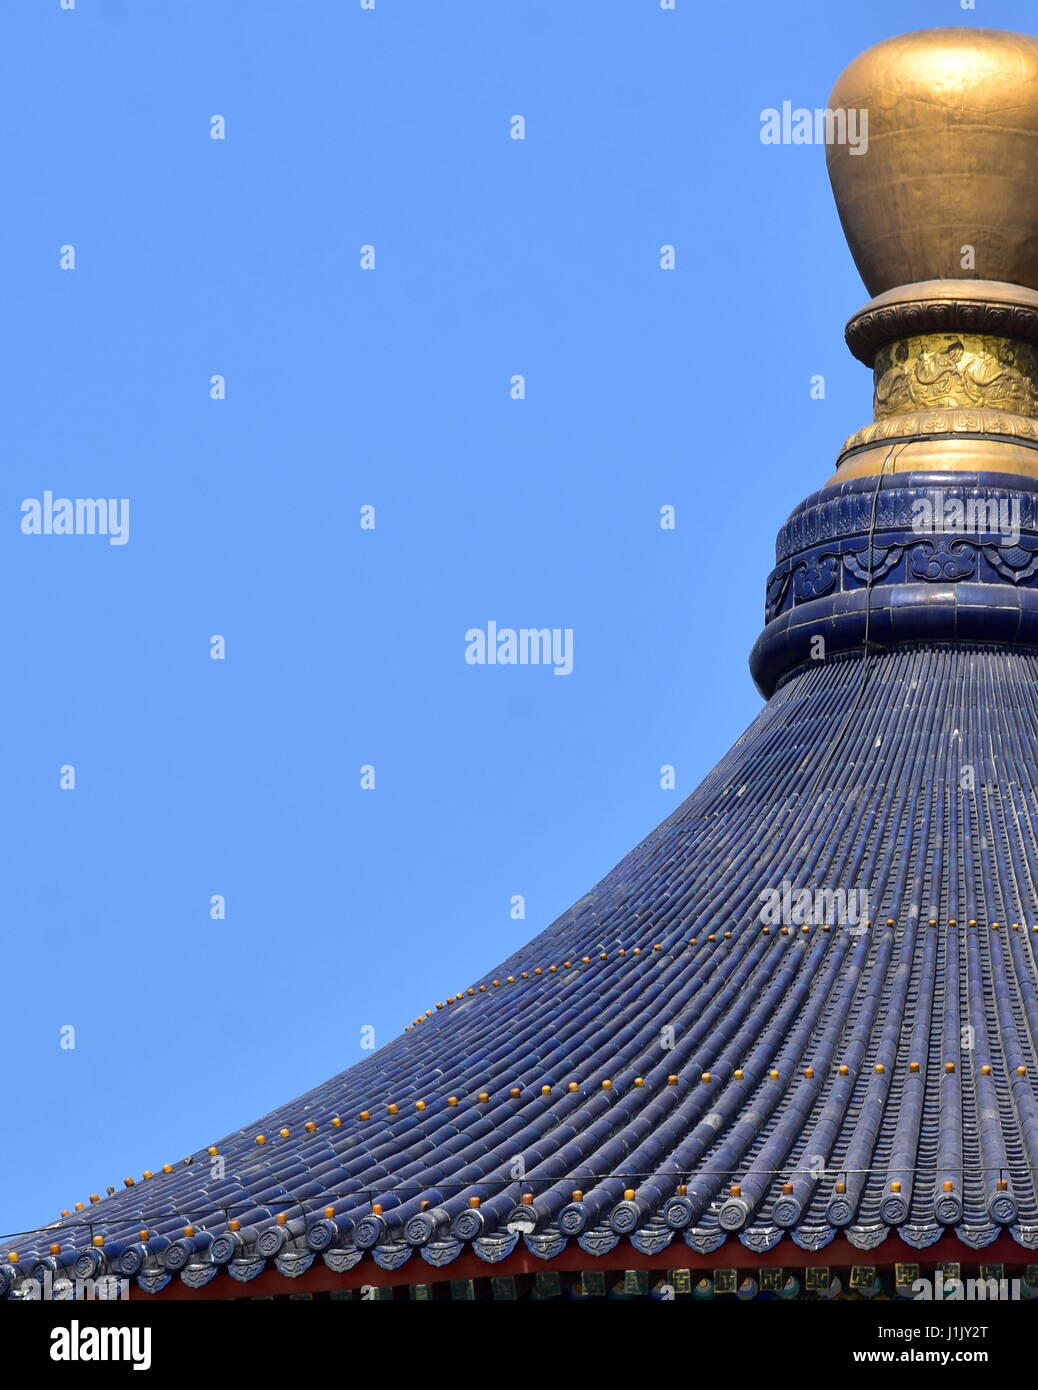 Temple du Ciel haut détail de toit contre ciel bleu clair - Beijing, Chine Banque D'Images